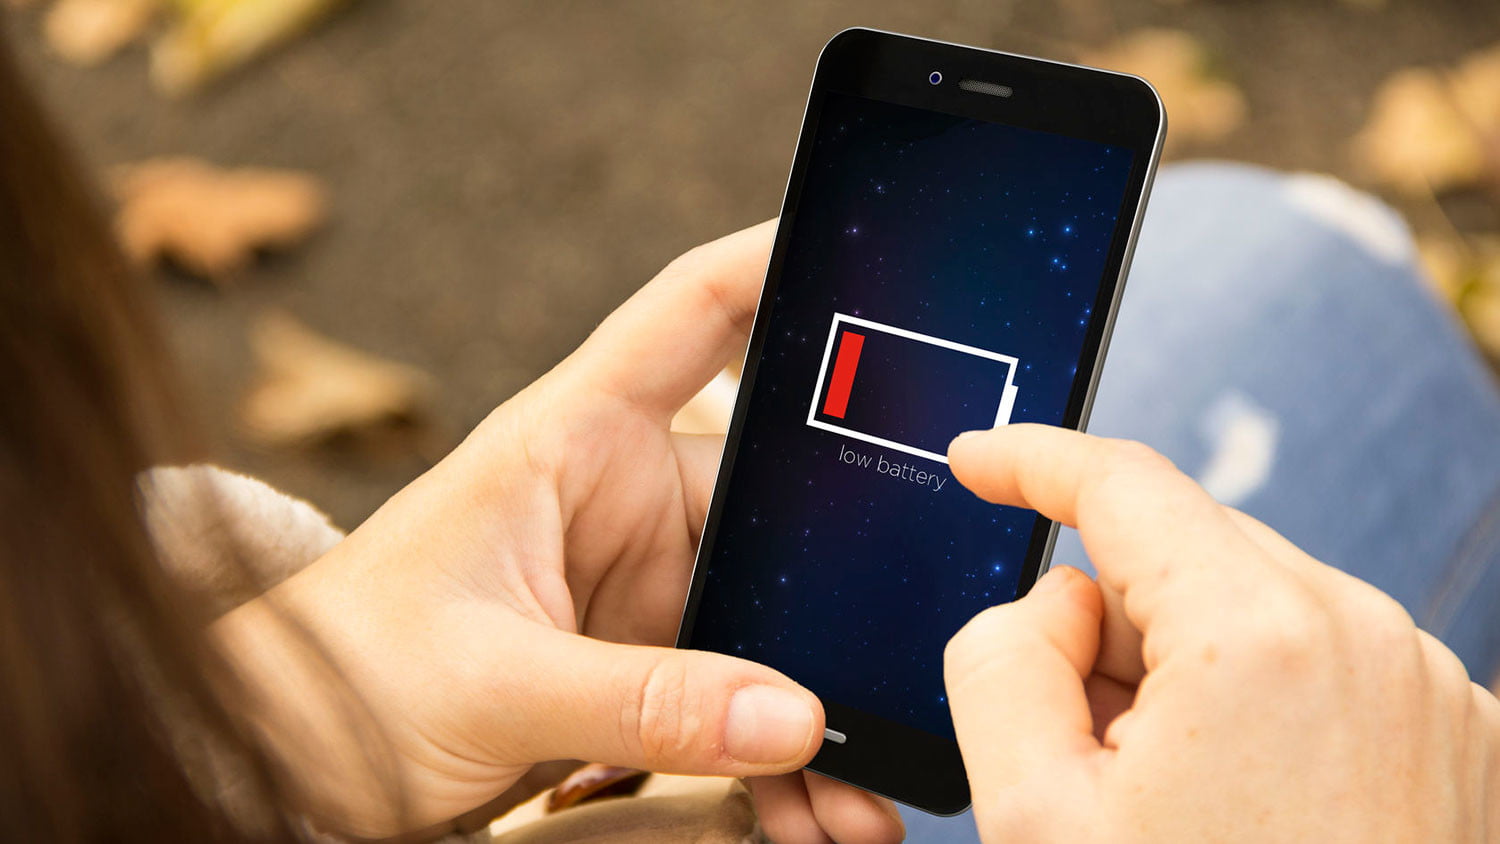 Mengatasi Baterai Smartphone Cepat Habis dengan Melakukan Kalibrasi Baterai